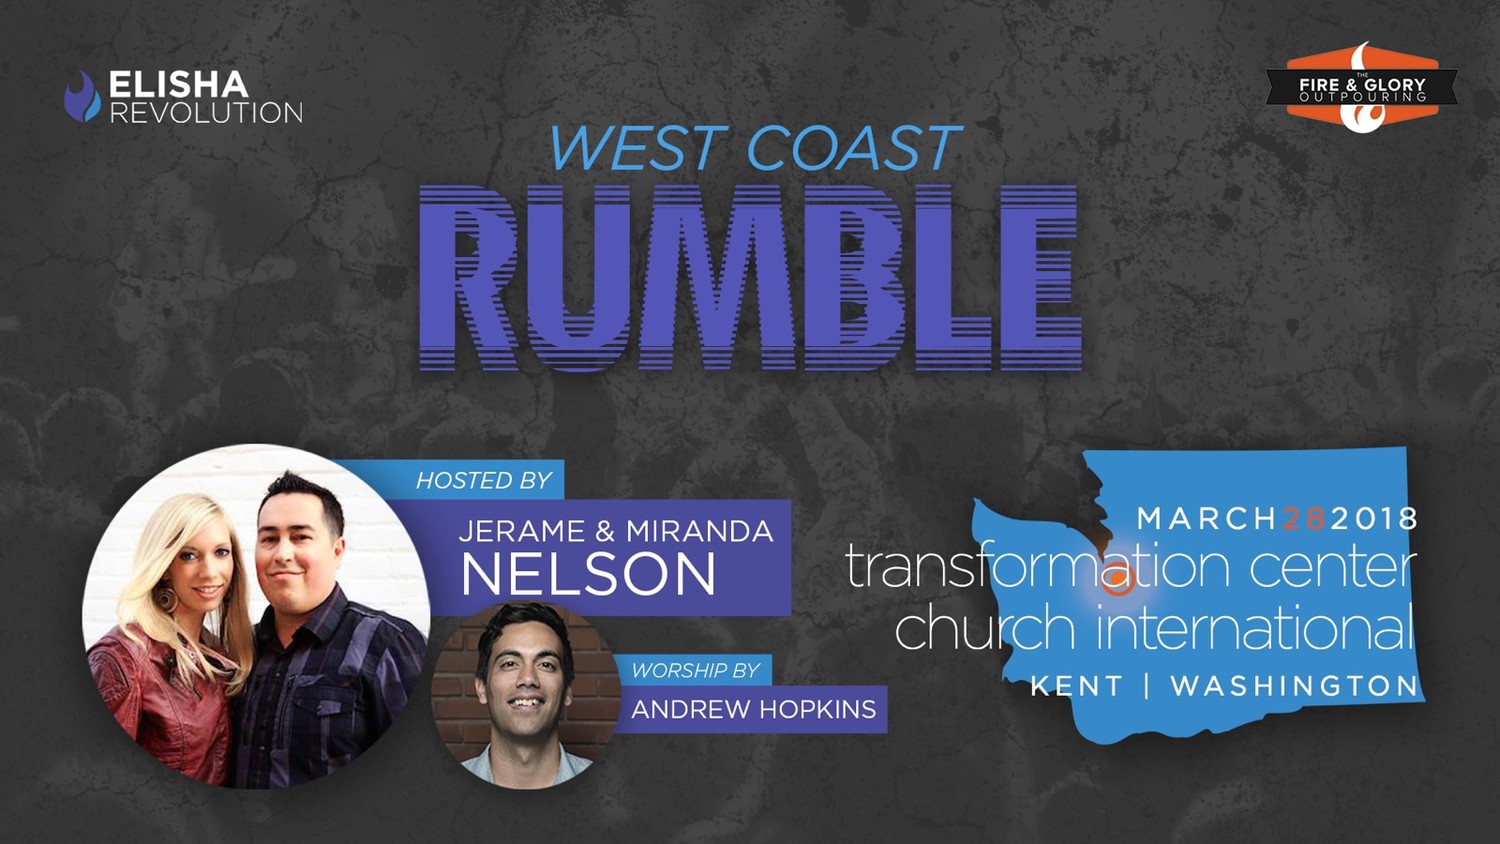 Пробуждение Западного побережья с Джереми Нельсоном (579 День пробуждения) / West Coast Rumble With Jerame Nelson Night 579 (March 28 2018)